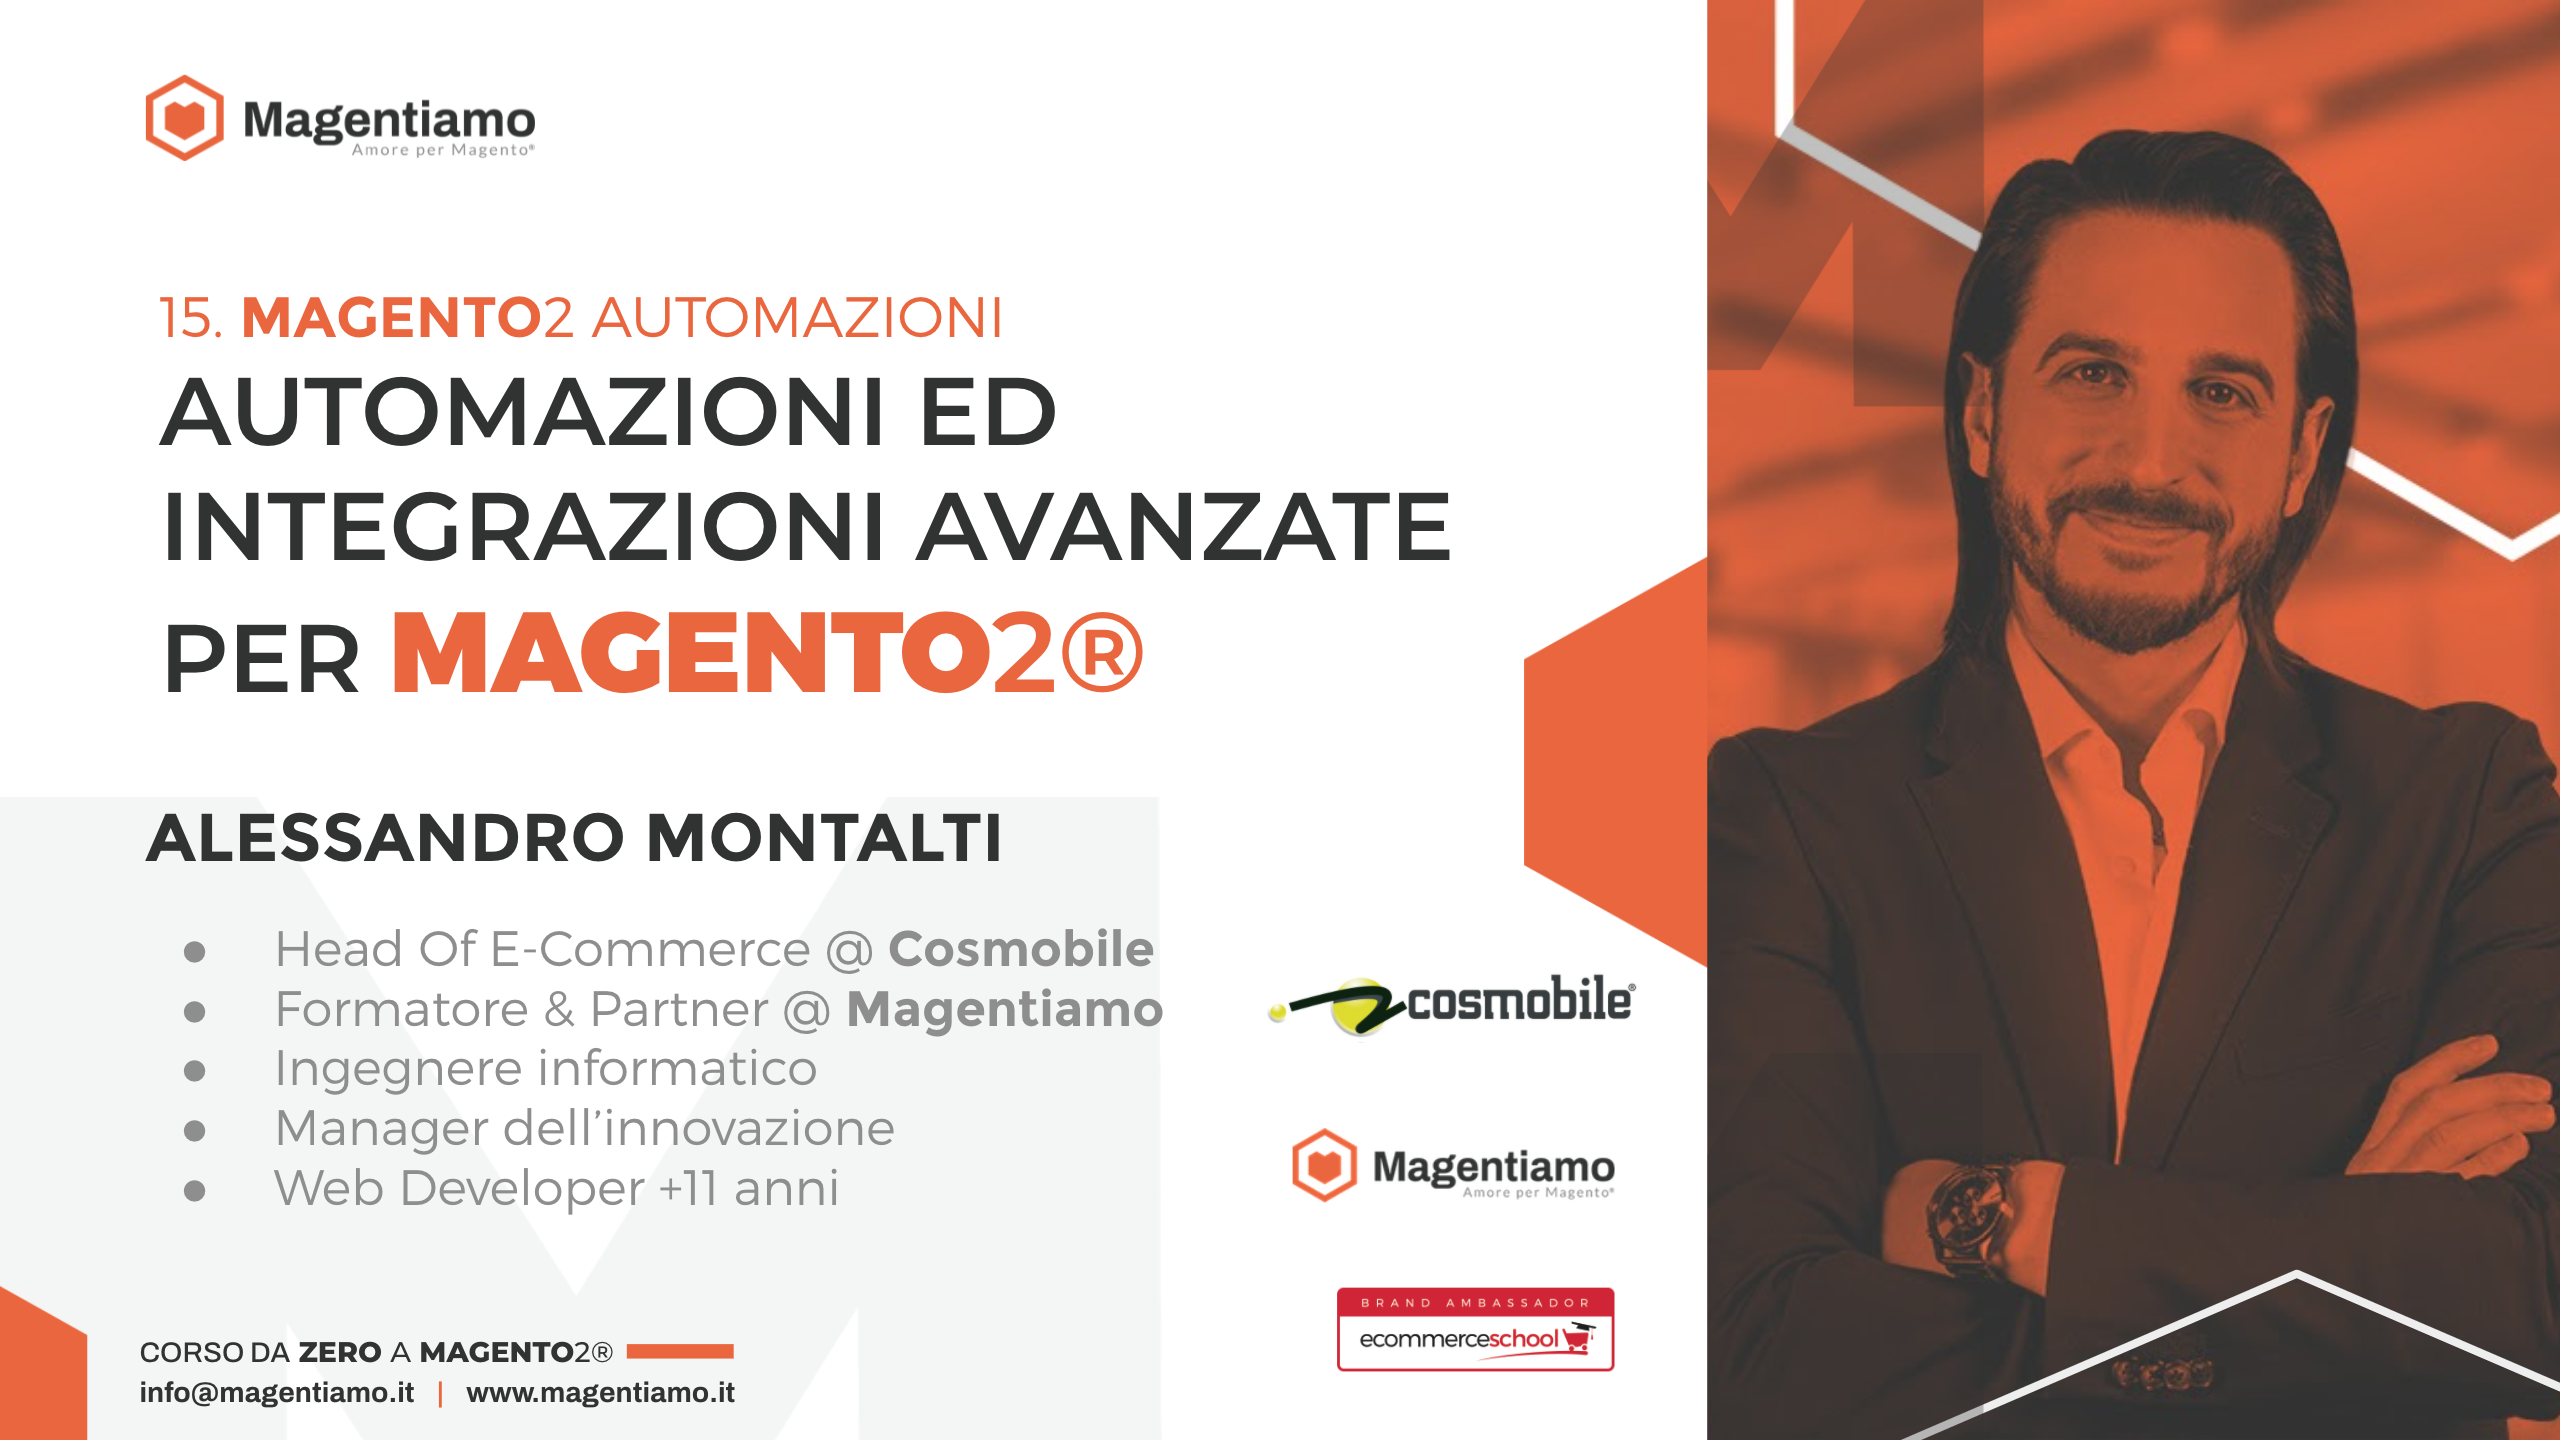 14. AUTOMAZIONI - Automazioni e integrazioni avanzate per Magento 2 - Alessandro Montalti COSMOBILE